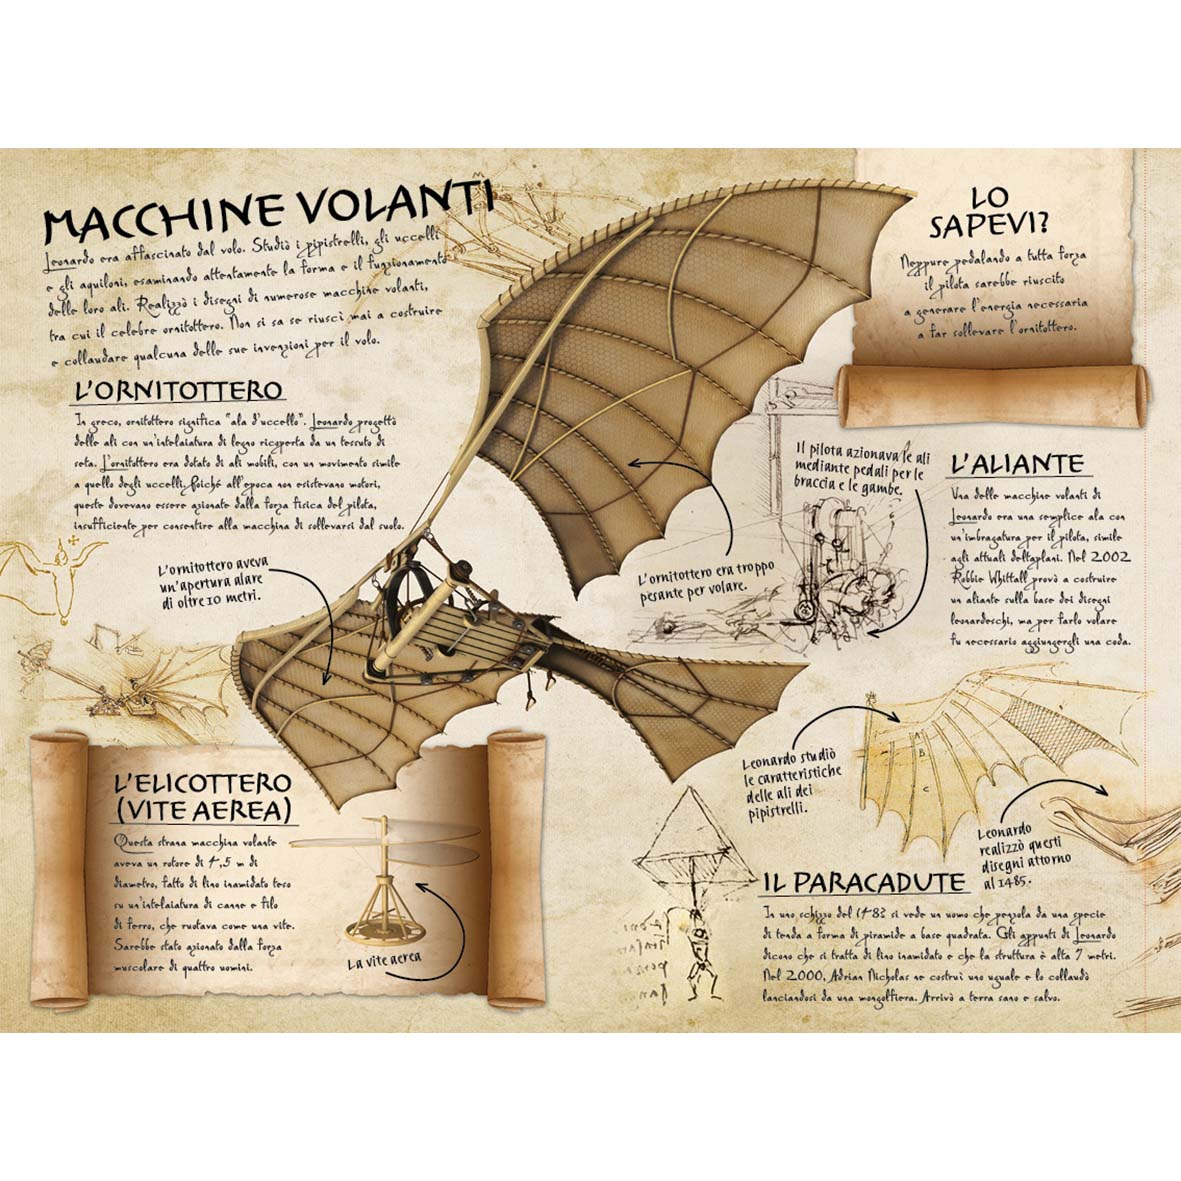 Stacca e crea le invenzioni di Leonardo da Vinci